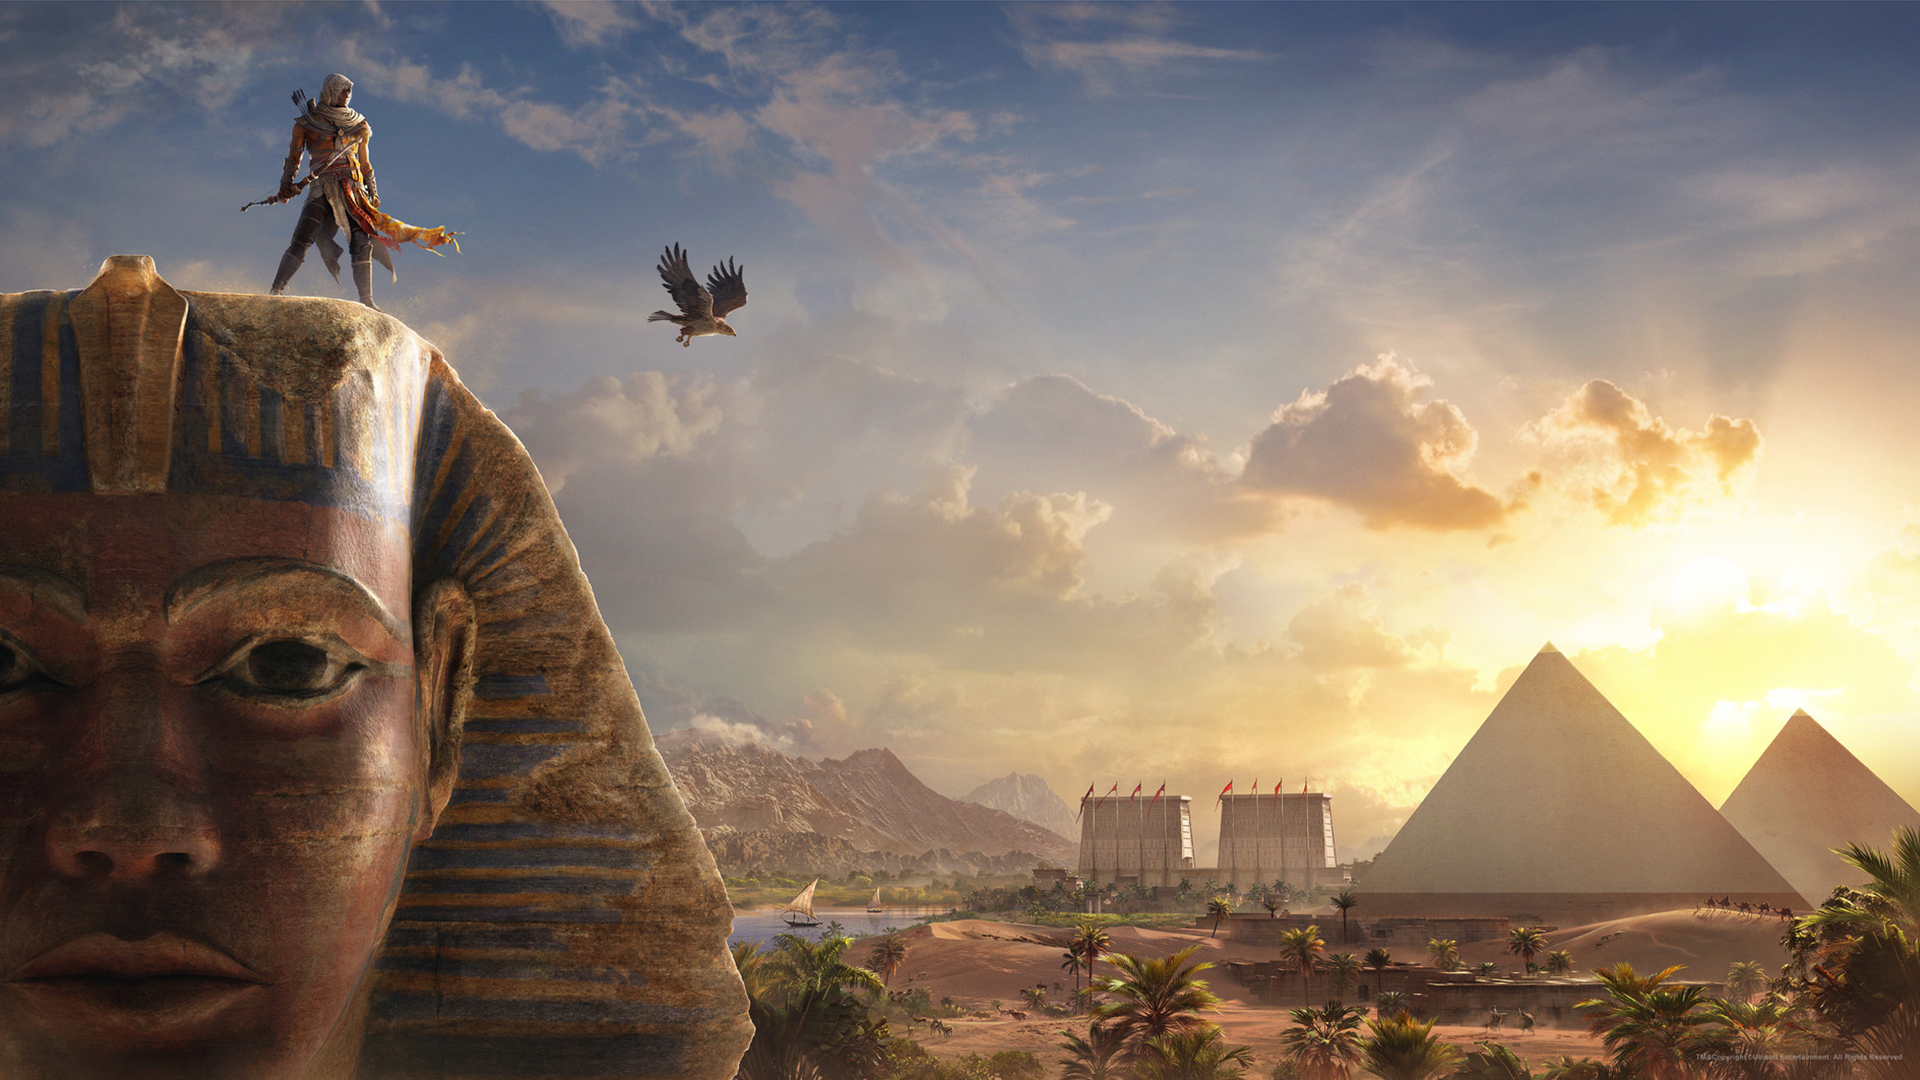 Bayek sobre el Sphynx y con vistas al antiguo Egipto en una imagen promocional de Assassin's Creed Origins.